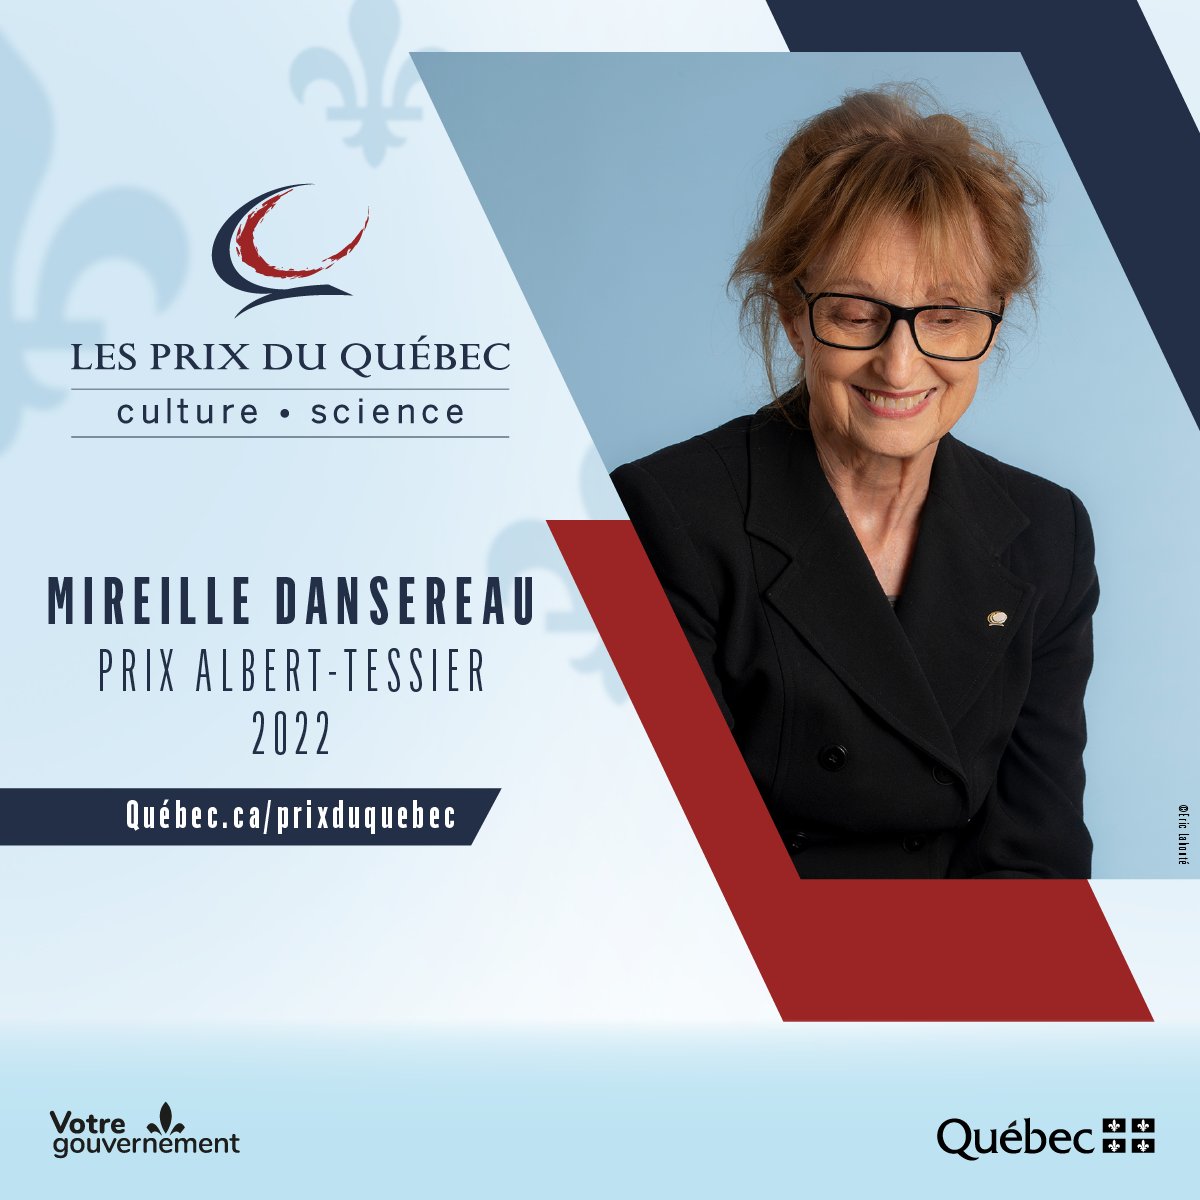 Félicitations à la cinéaste Mireille Dansereau pour l’obtention du prix Alber-Tessier 2022, la plus haute distinction attribuée à un-e artiste québécois-e du cinéma. 🏆🎬

#PrixduQuébec